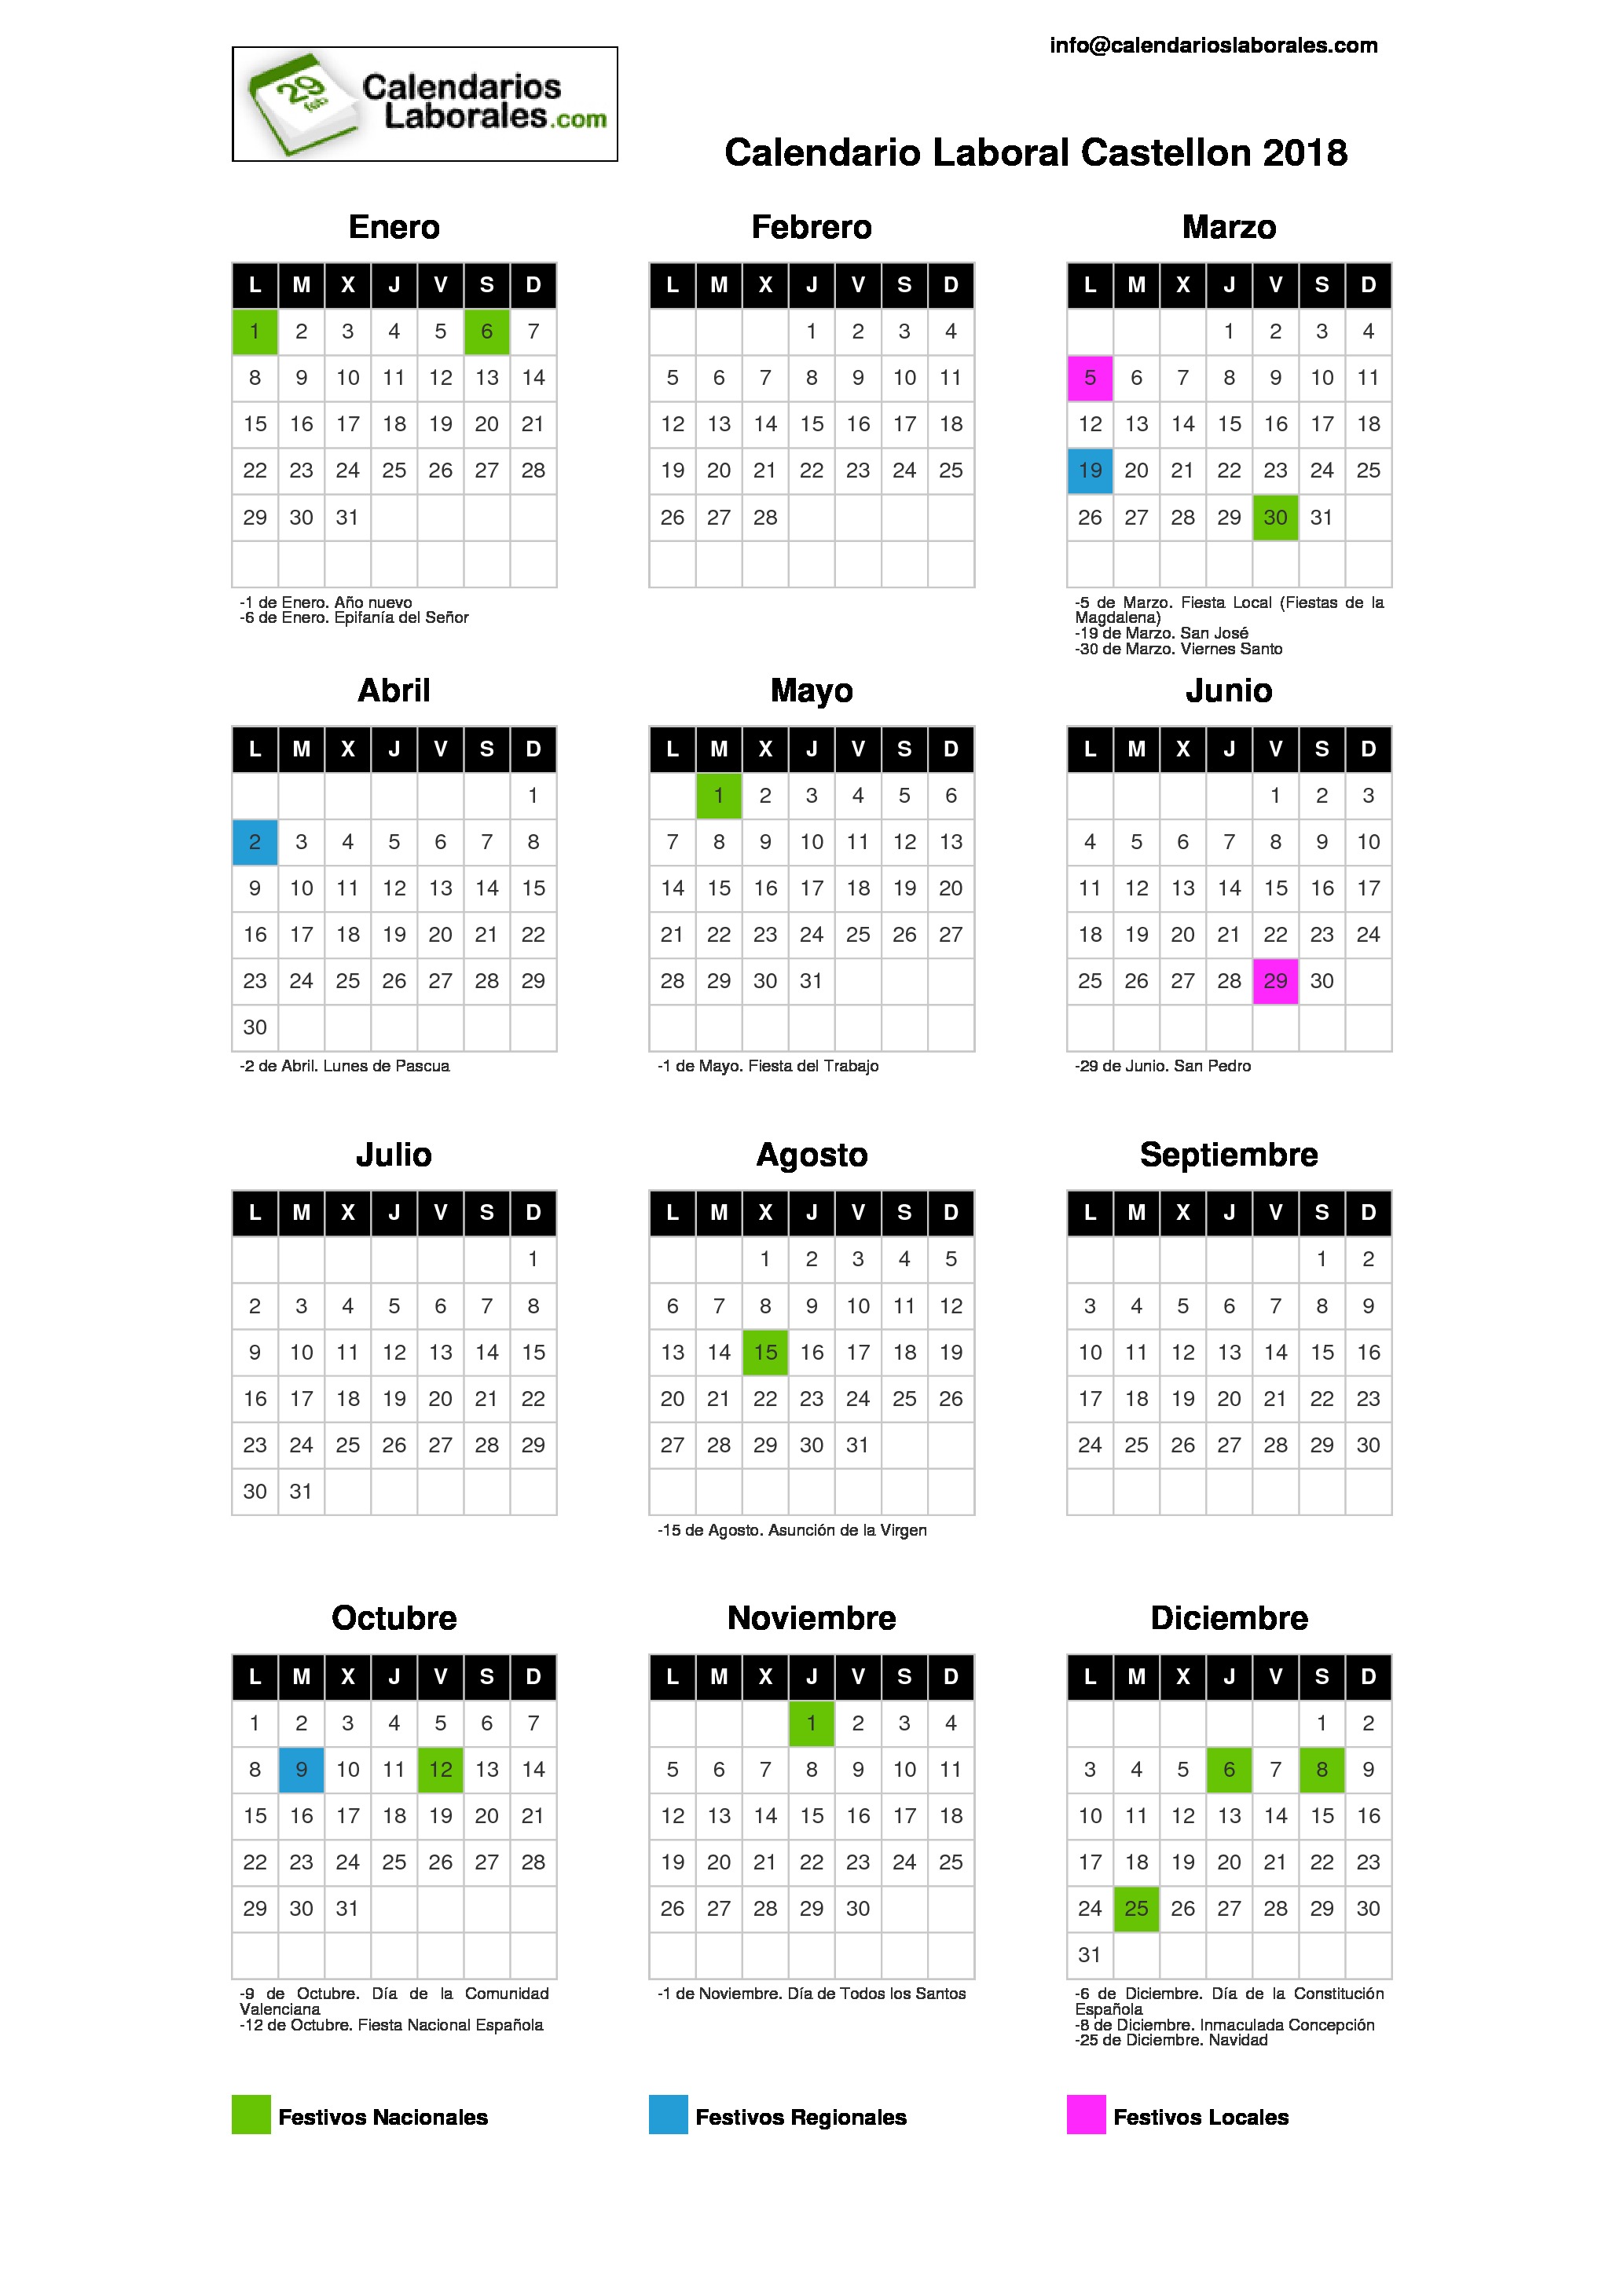 Calendario Laboral Castellón 2018